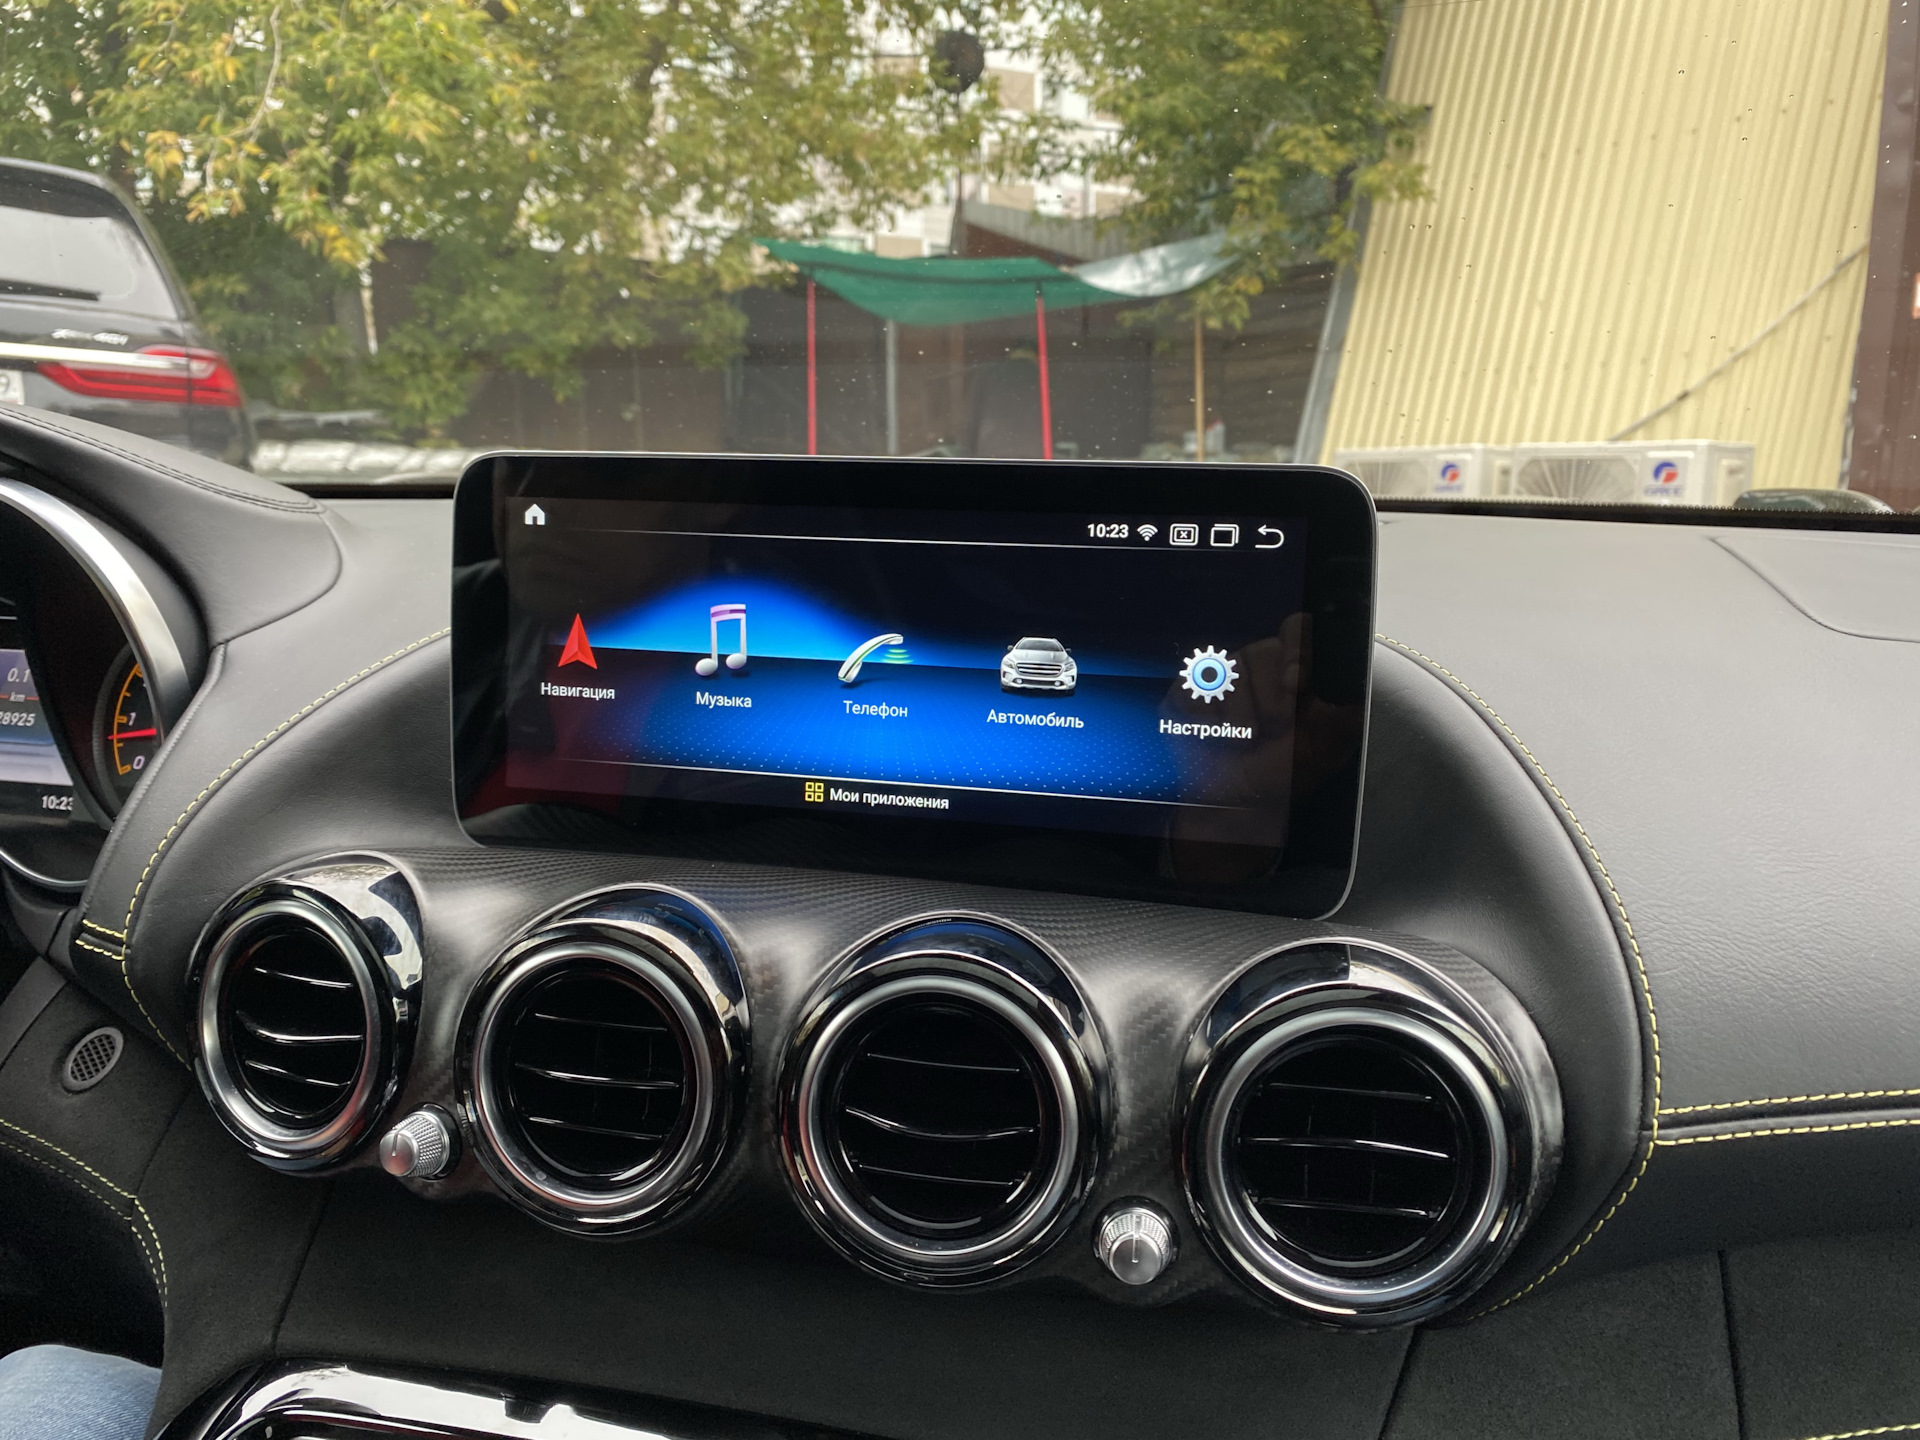 Экран мазда 6. Большой дисплей для Mazda 6. Mazda CX 5 большой экран. Большой монитор в Мазда сх5. Штатный экран Мазда 6 2020.